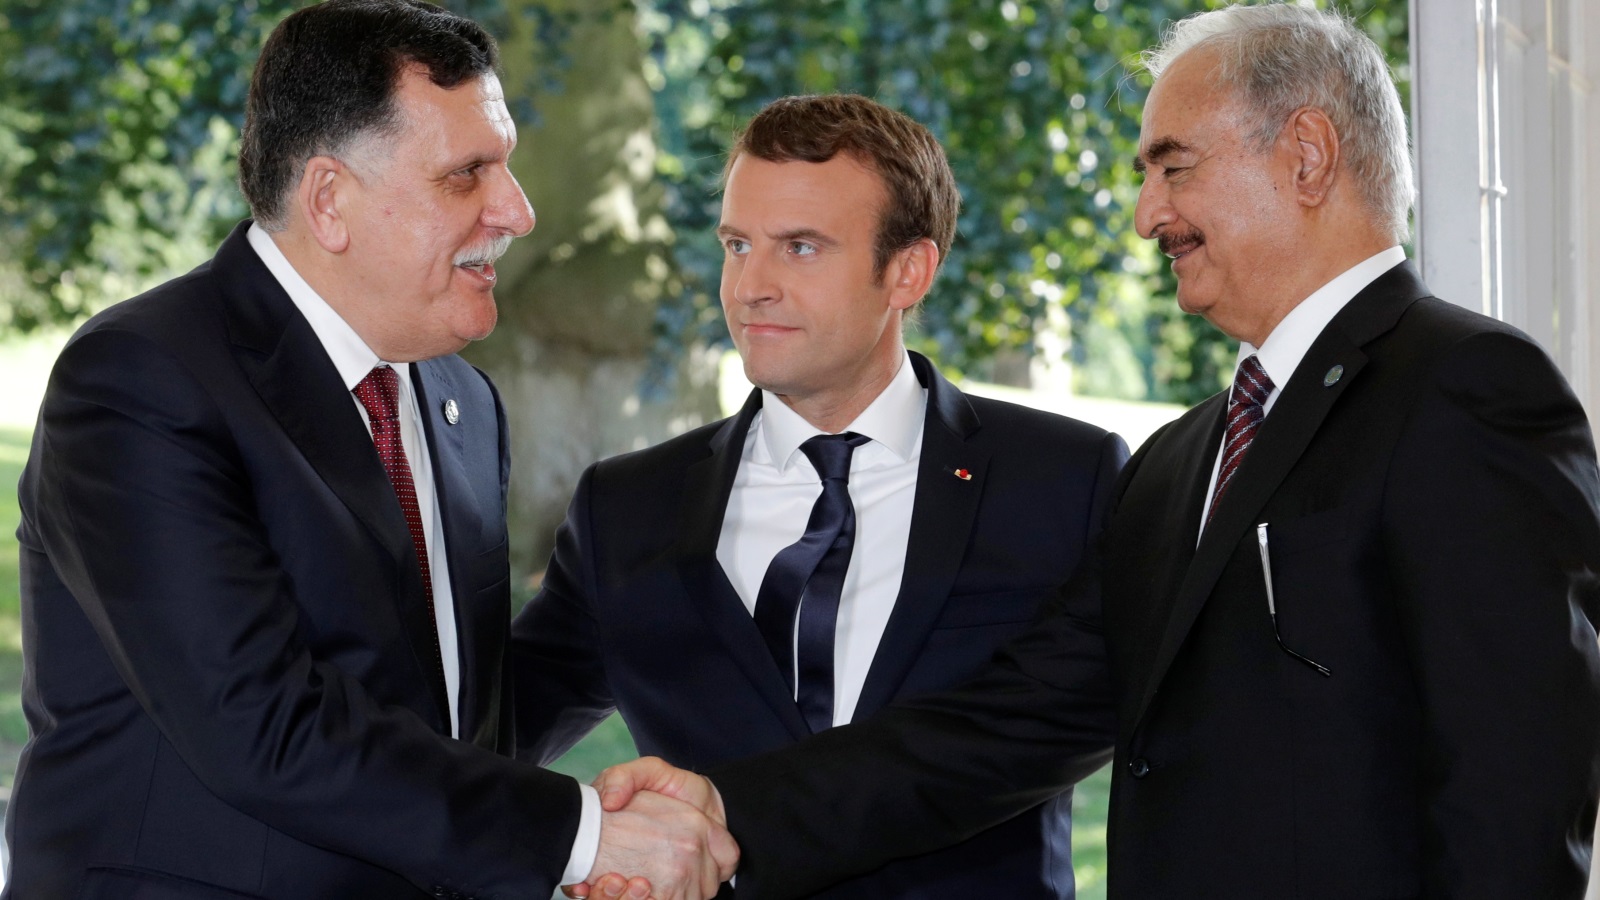  الرئيس الفرنسي ماكرون يقف بين الجنرال خليفة حفتر ورئيس حكومة الوفاق فايز السرّاج (رويترز)